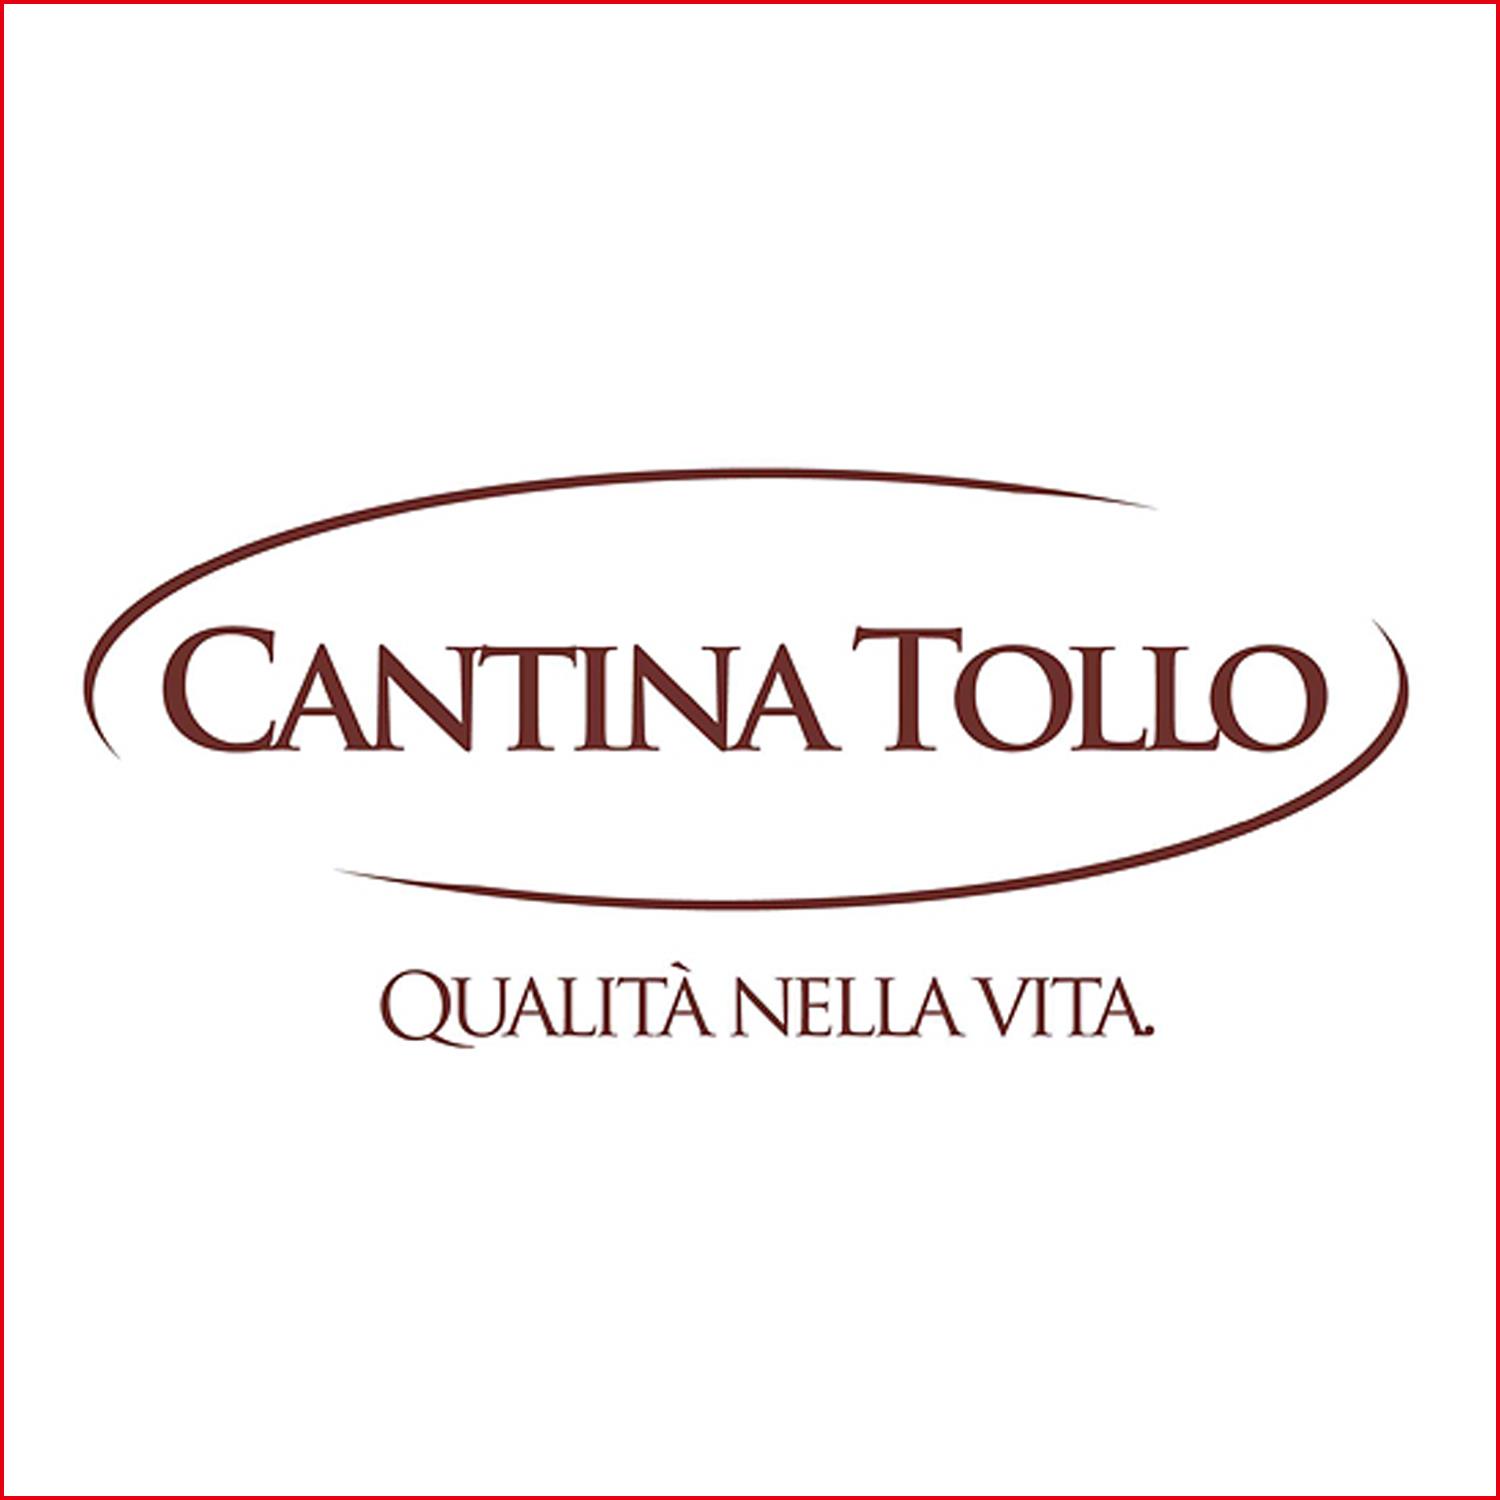 卡地娜‧朵羅酒廠 Cantina Tollo